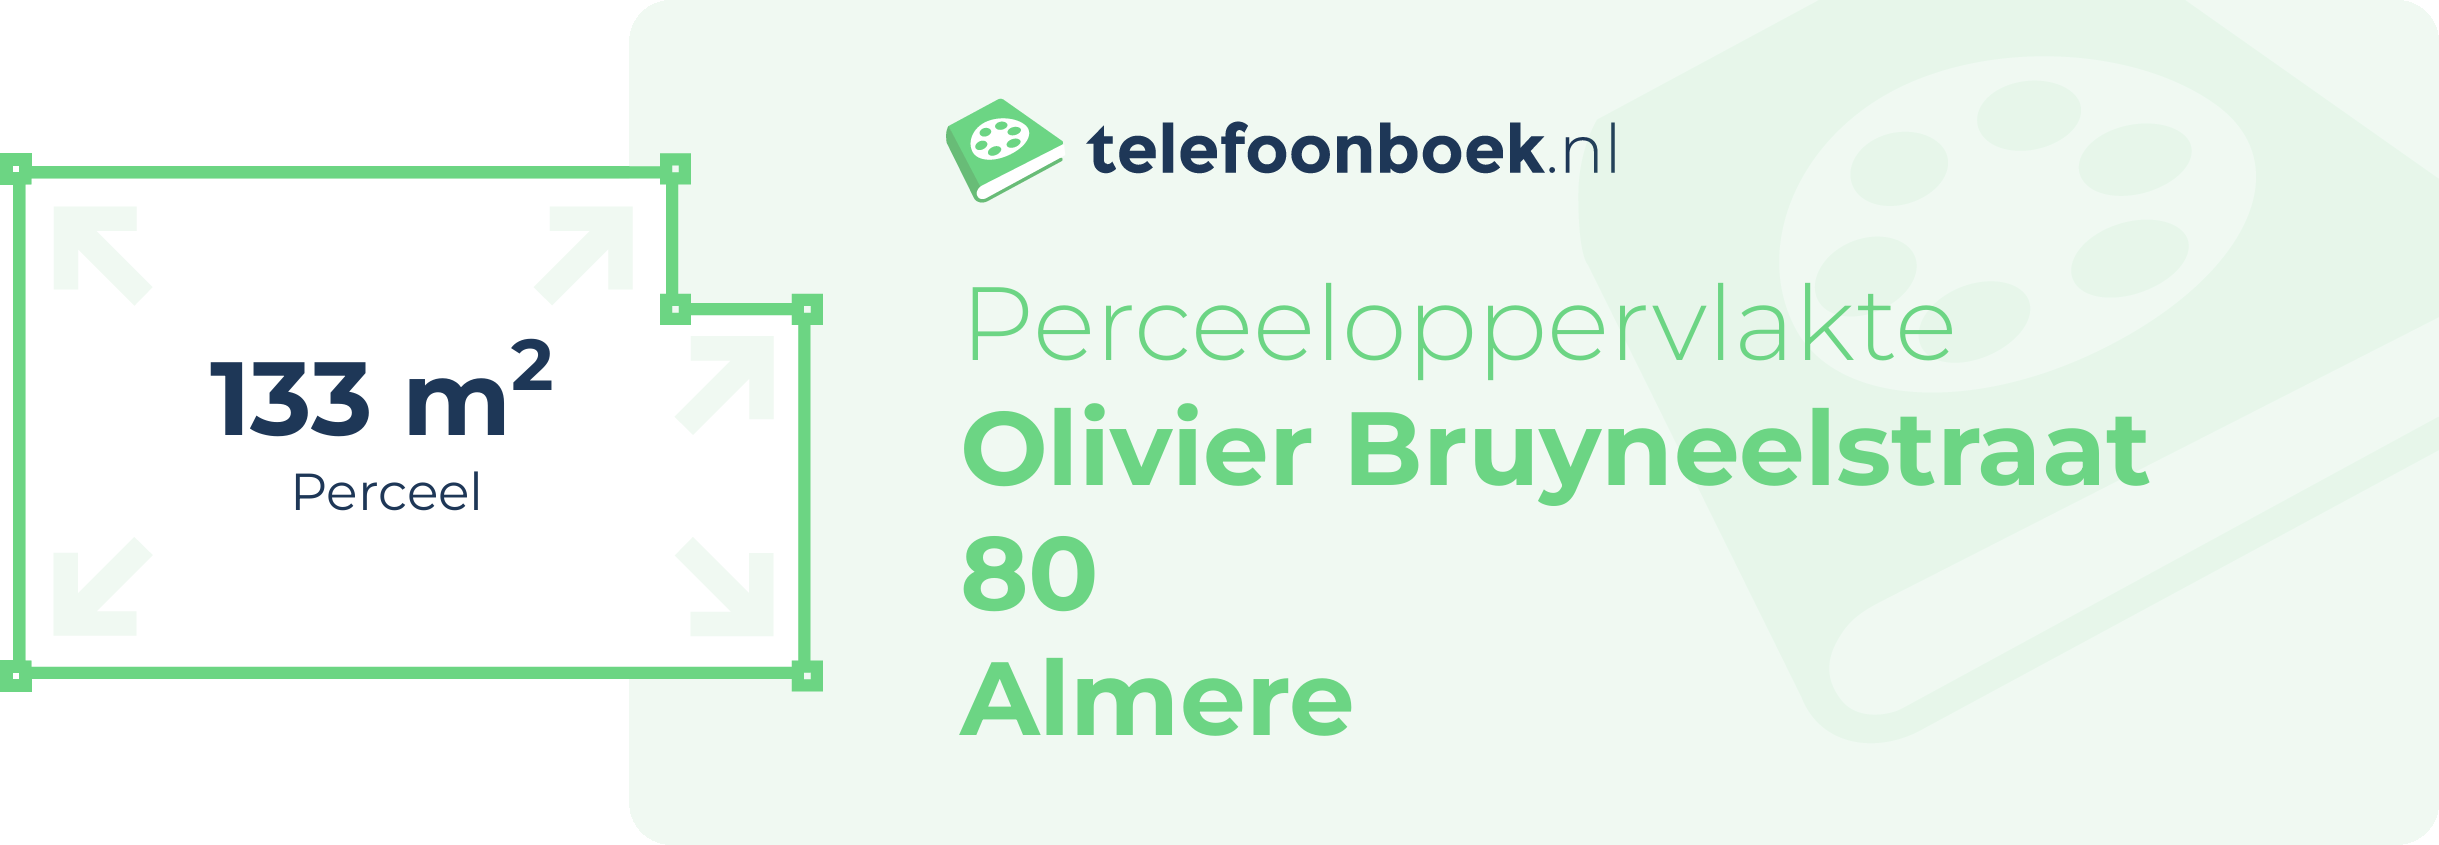 Perceeloppervlakte Olivier Bruyneelstraat 80 Almere